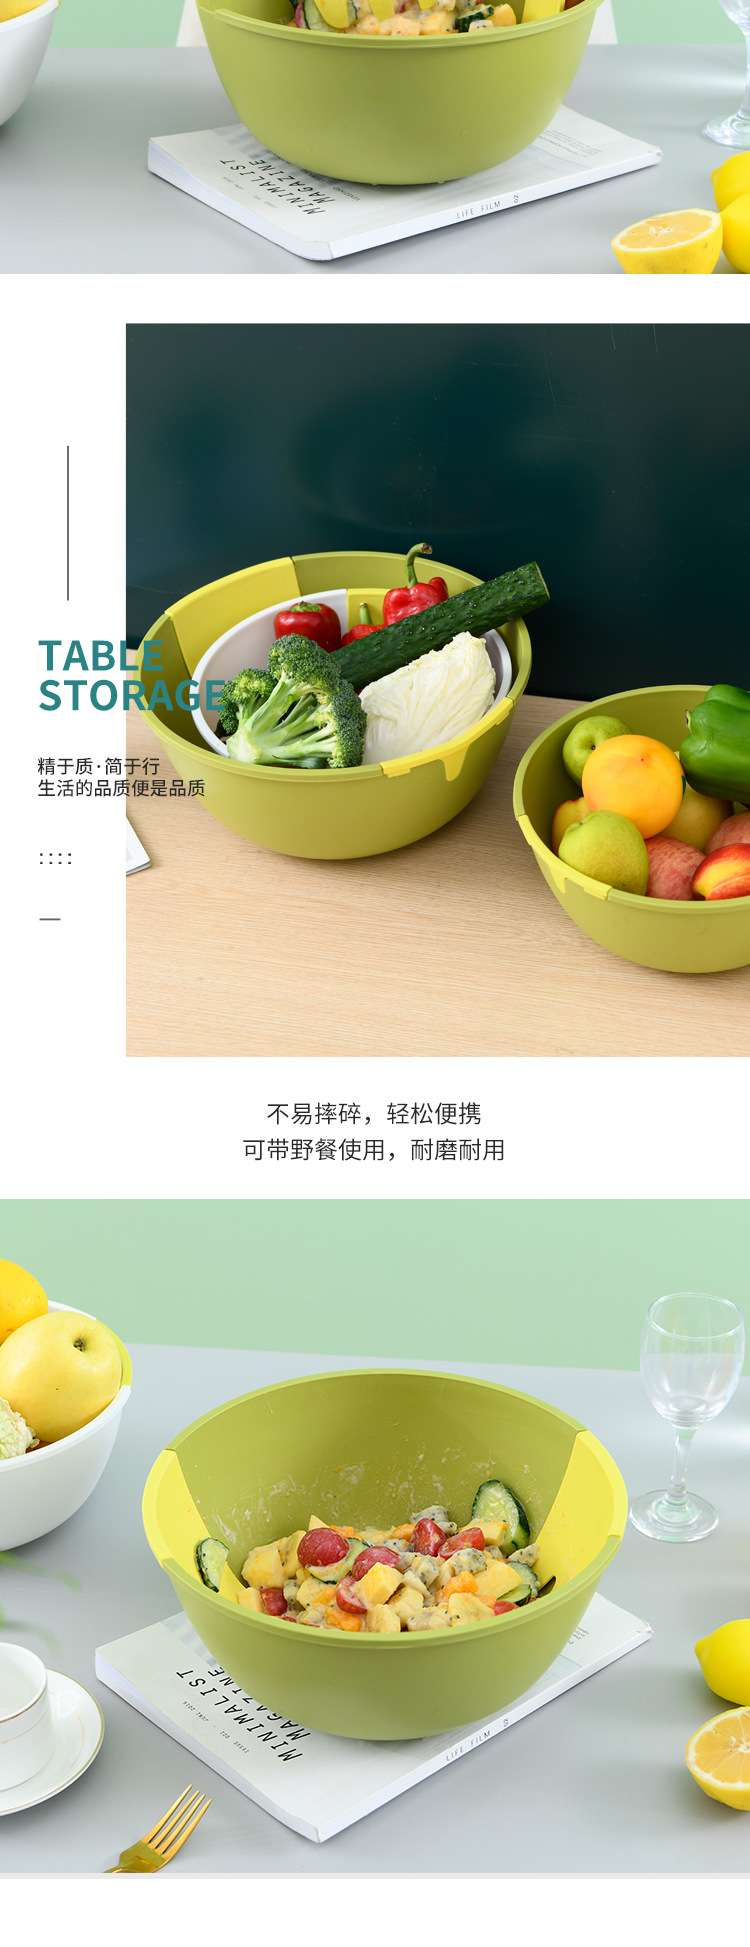 S39-8709自带搅拌勺沙拉碗家用塑料纯色圆形蔬菜水果碗厨房零食碗详情图3